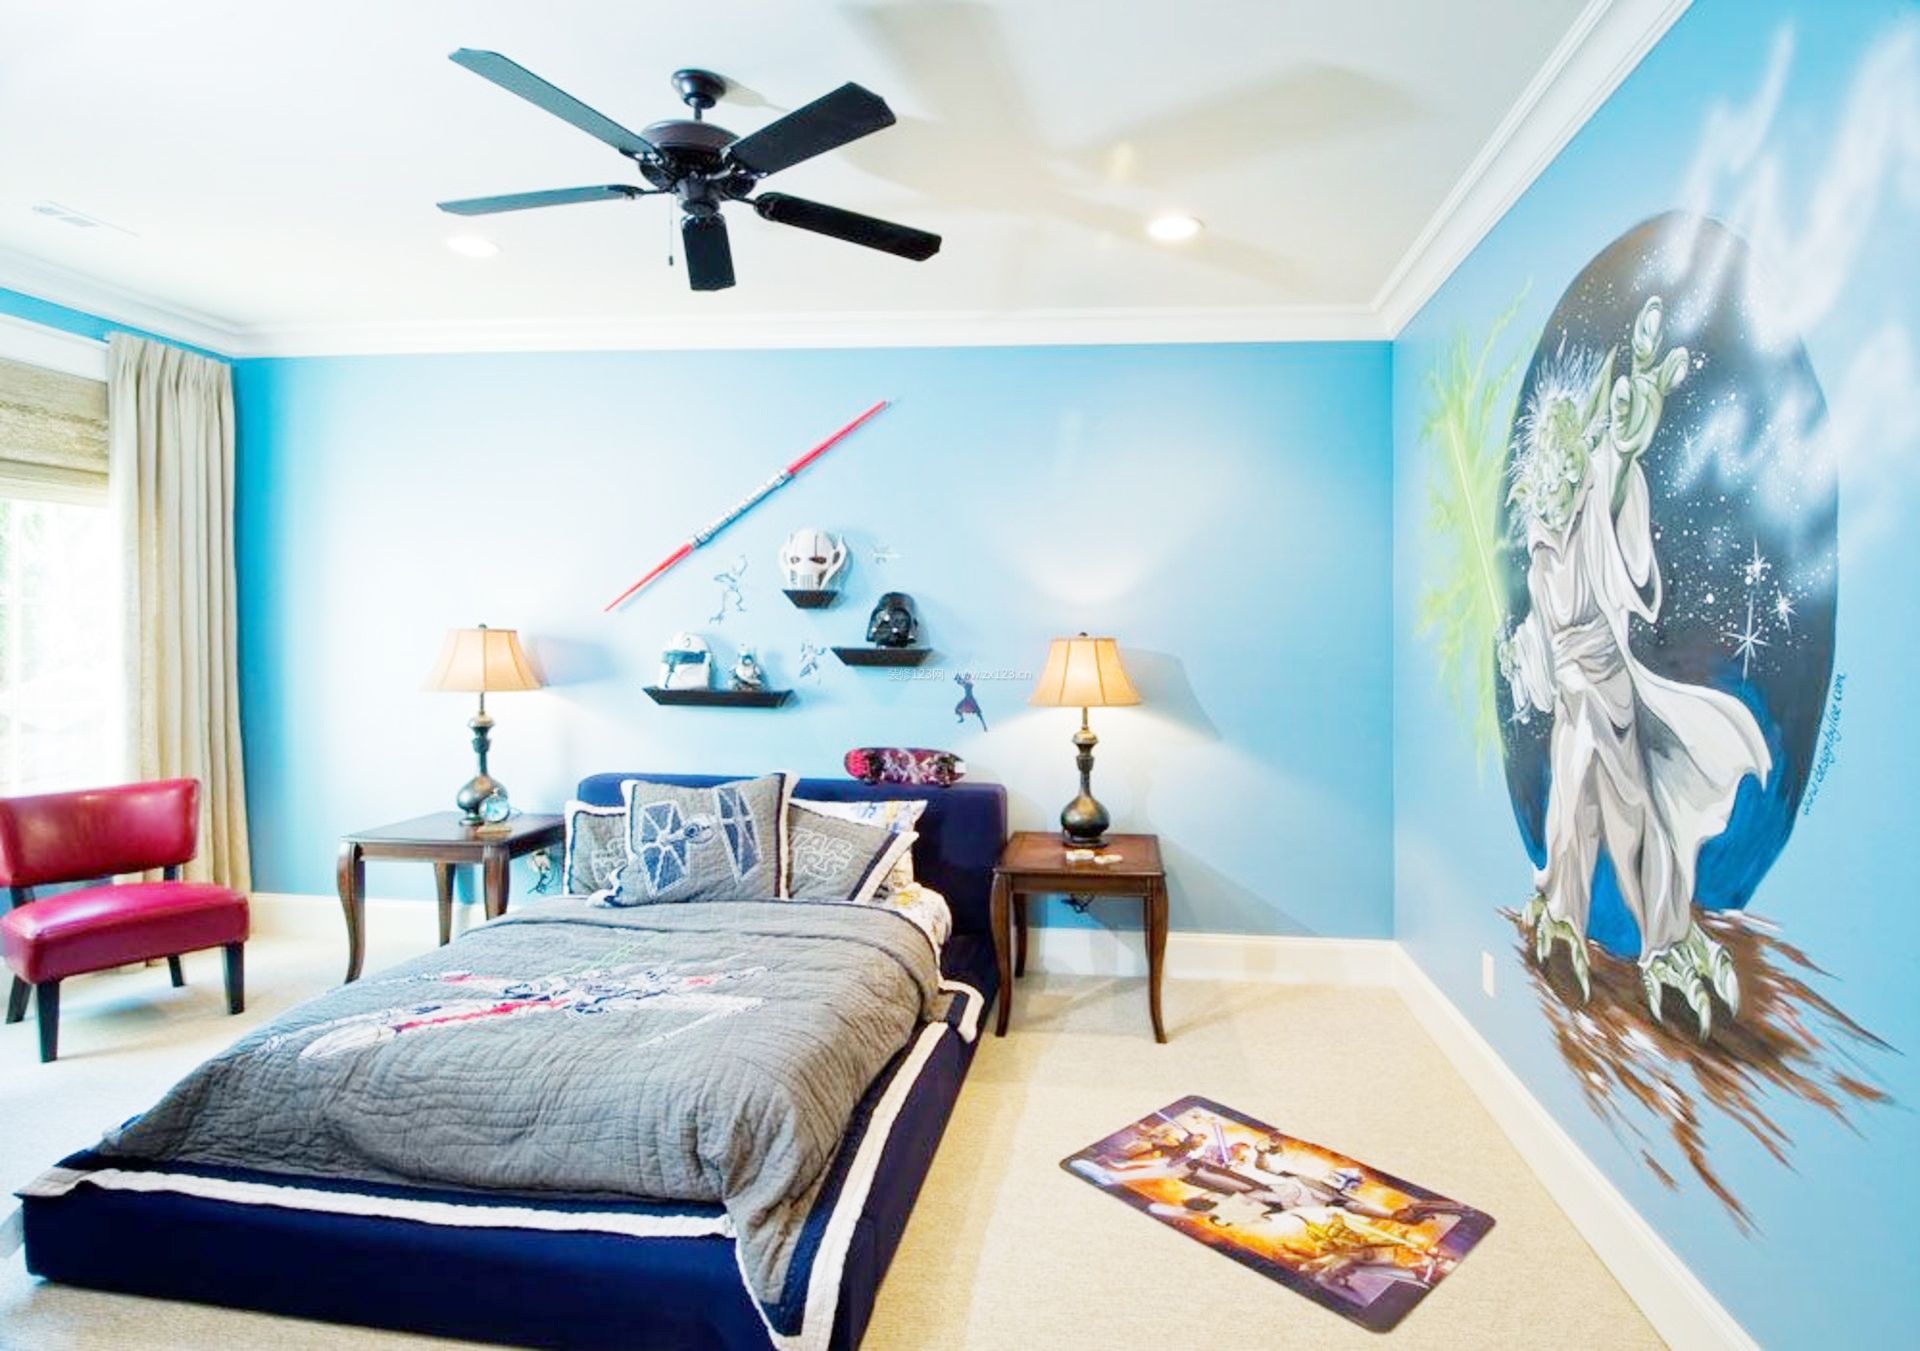 男生卧室彩色墙面漆效果图 